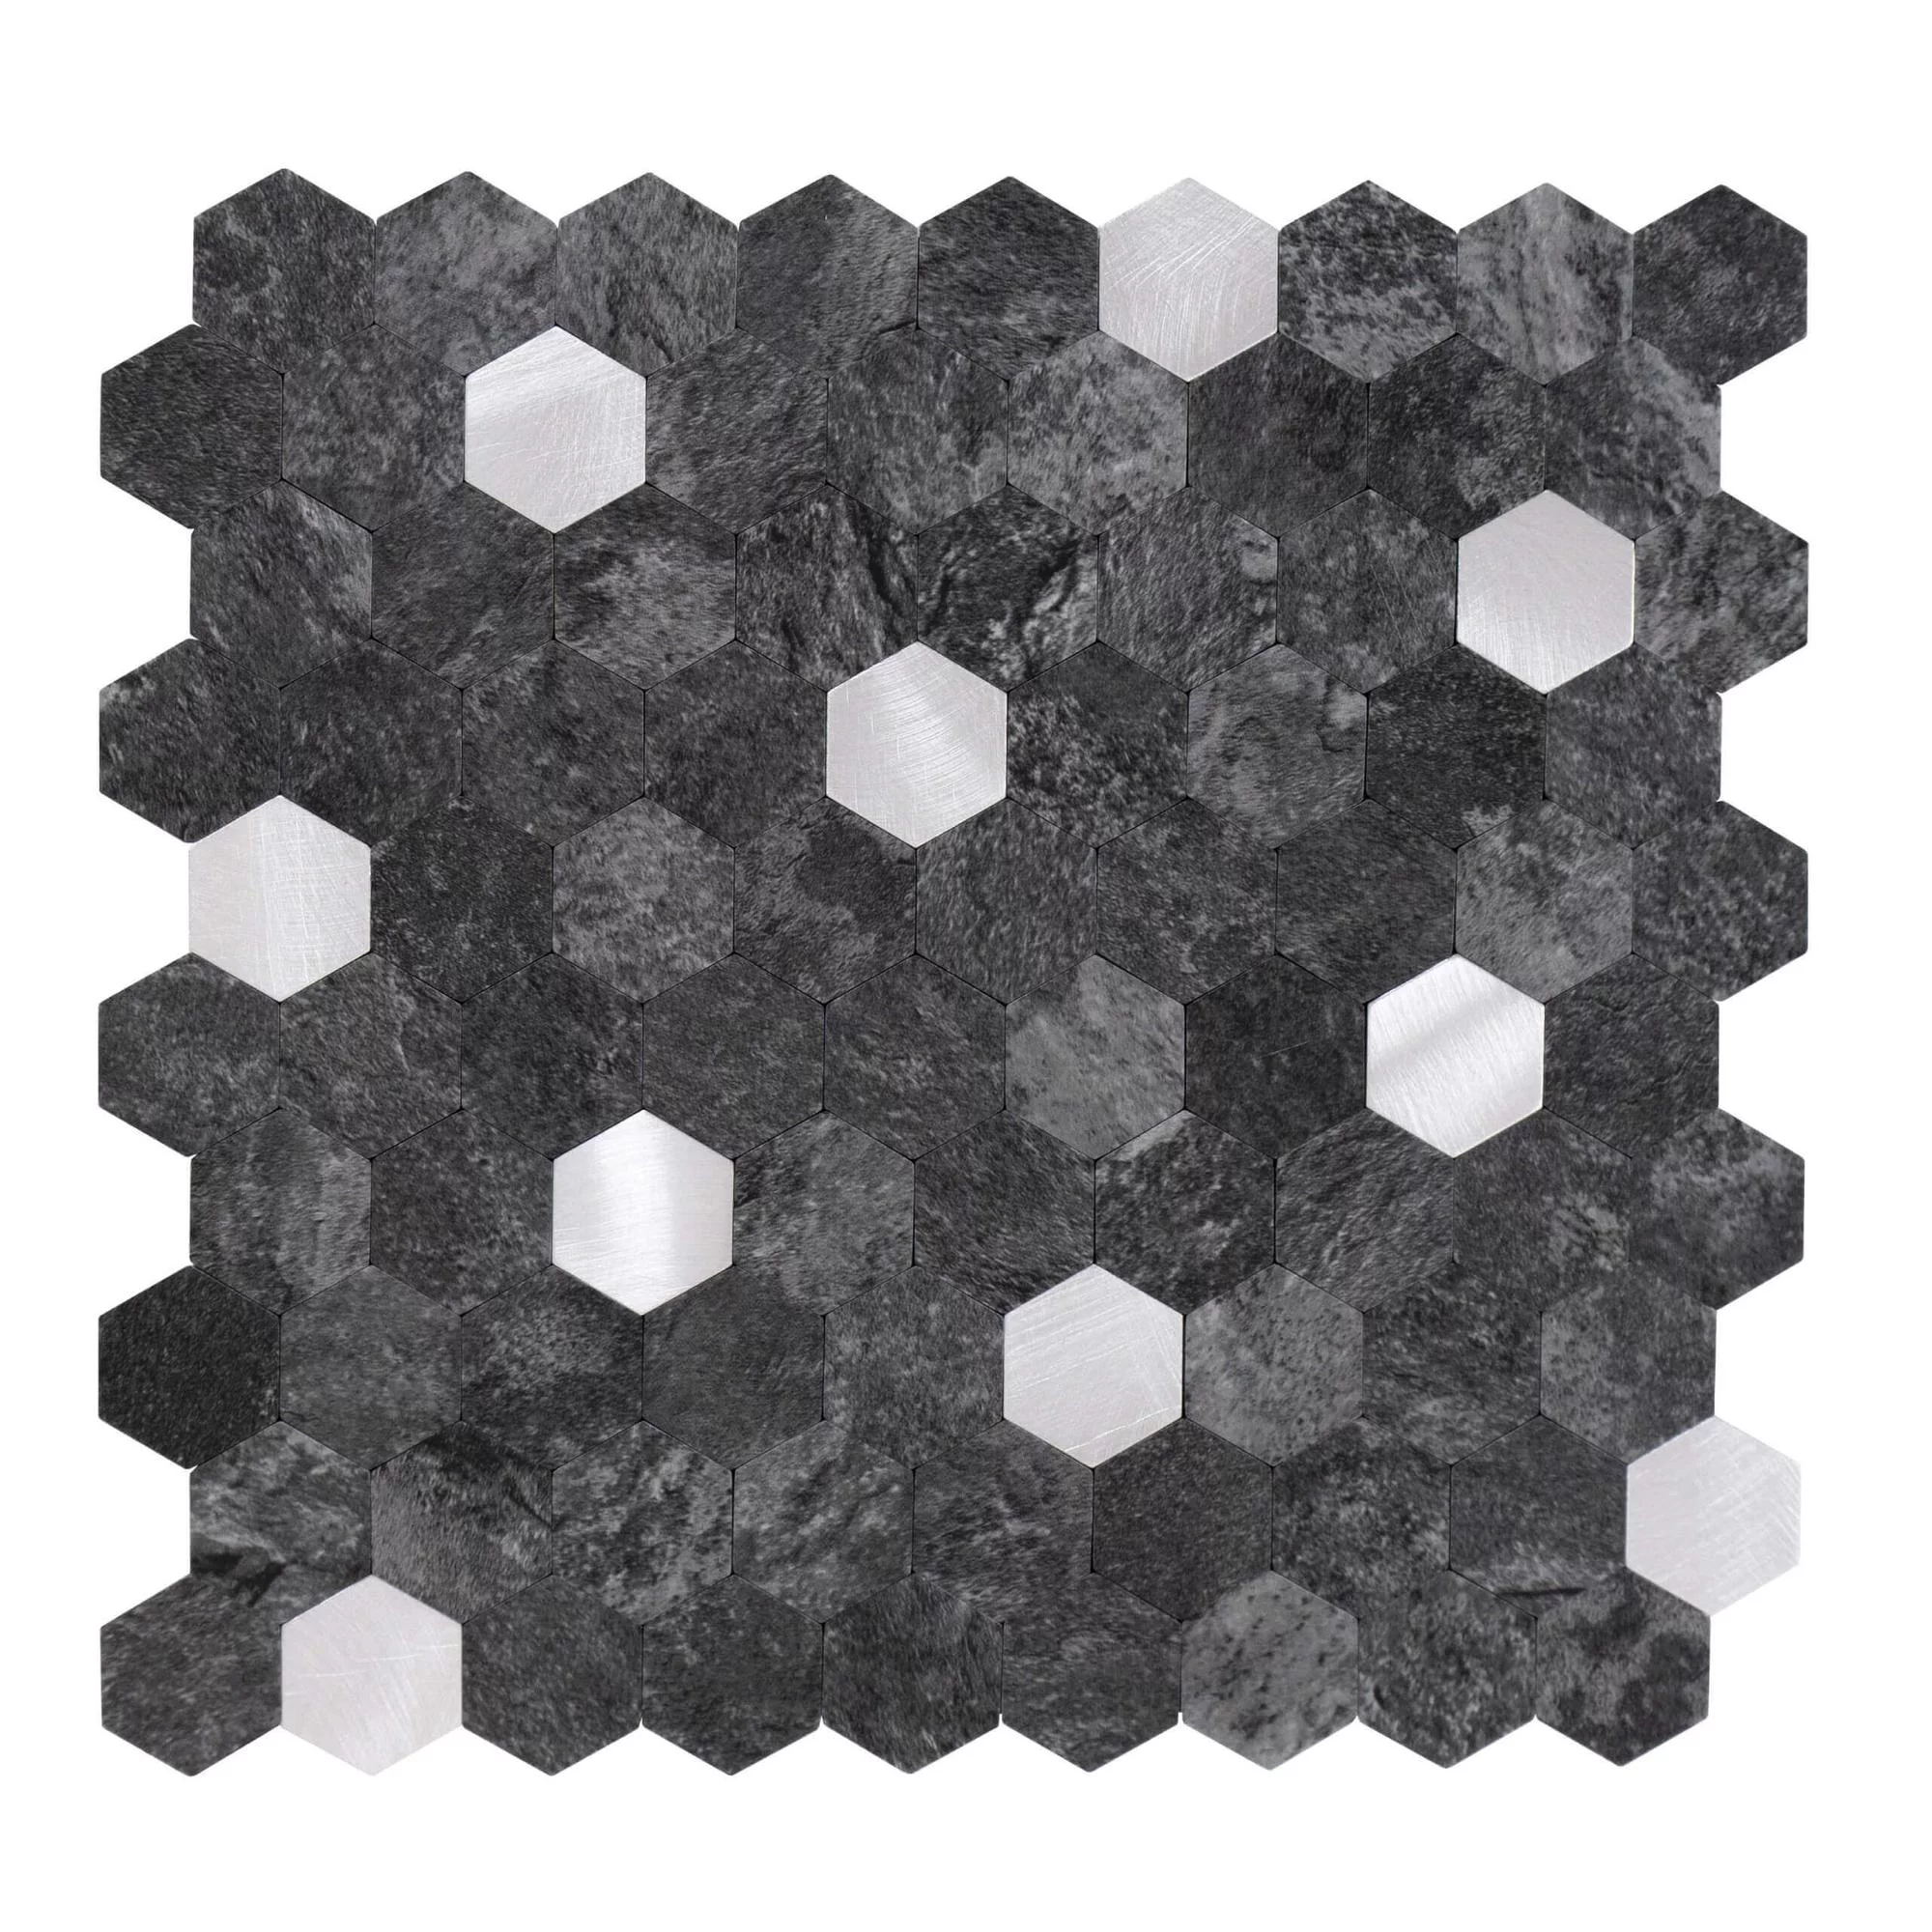 carreaux-autocollants-forme-hexagonale-0.88m².-11-pcs-aspect-pierre-anthracite-argent